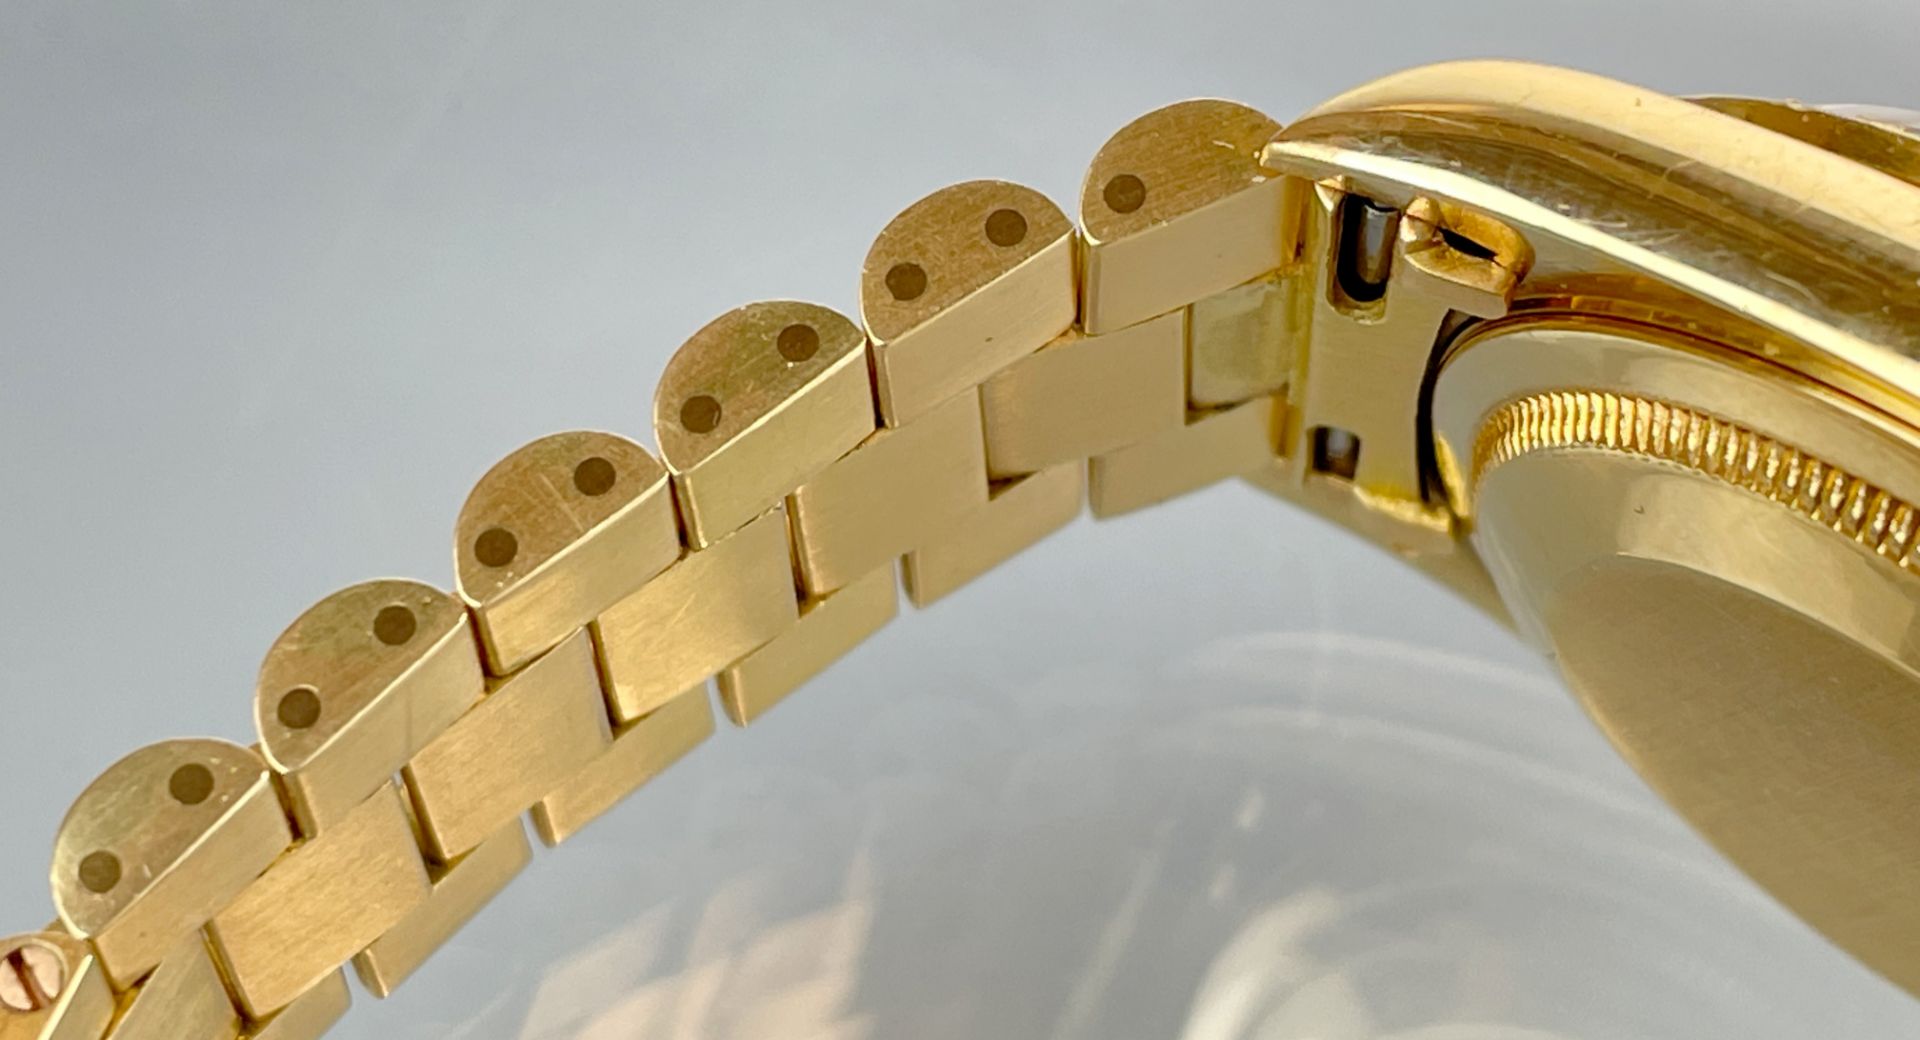 Armbanduhr ROLEX Day-Date 750 Gelbgold mit Brillanten. Ende 1980er Jahre. - Bild 6 aus 17